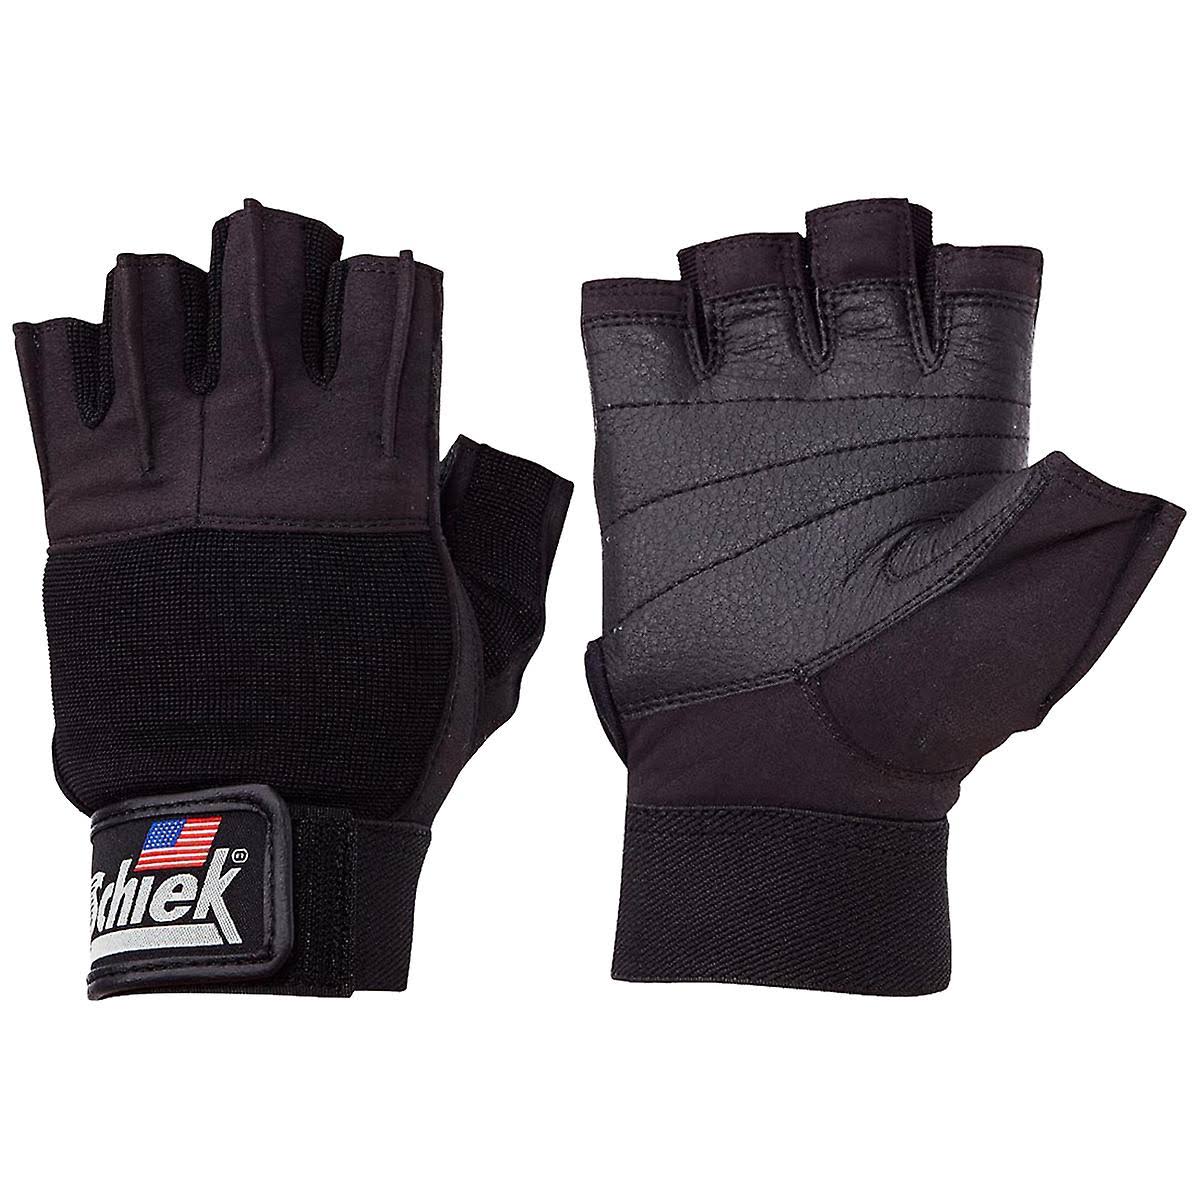 Schiek Sports Women's Gel Lifting Gloves